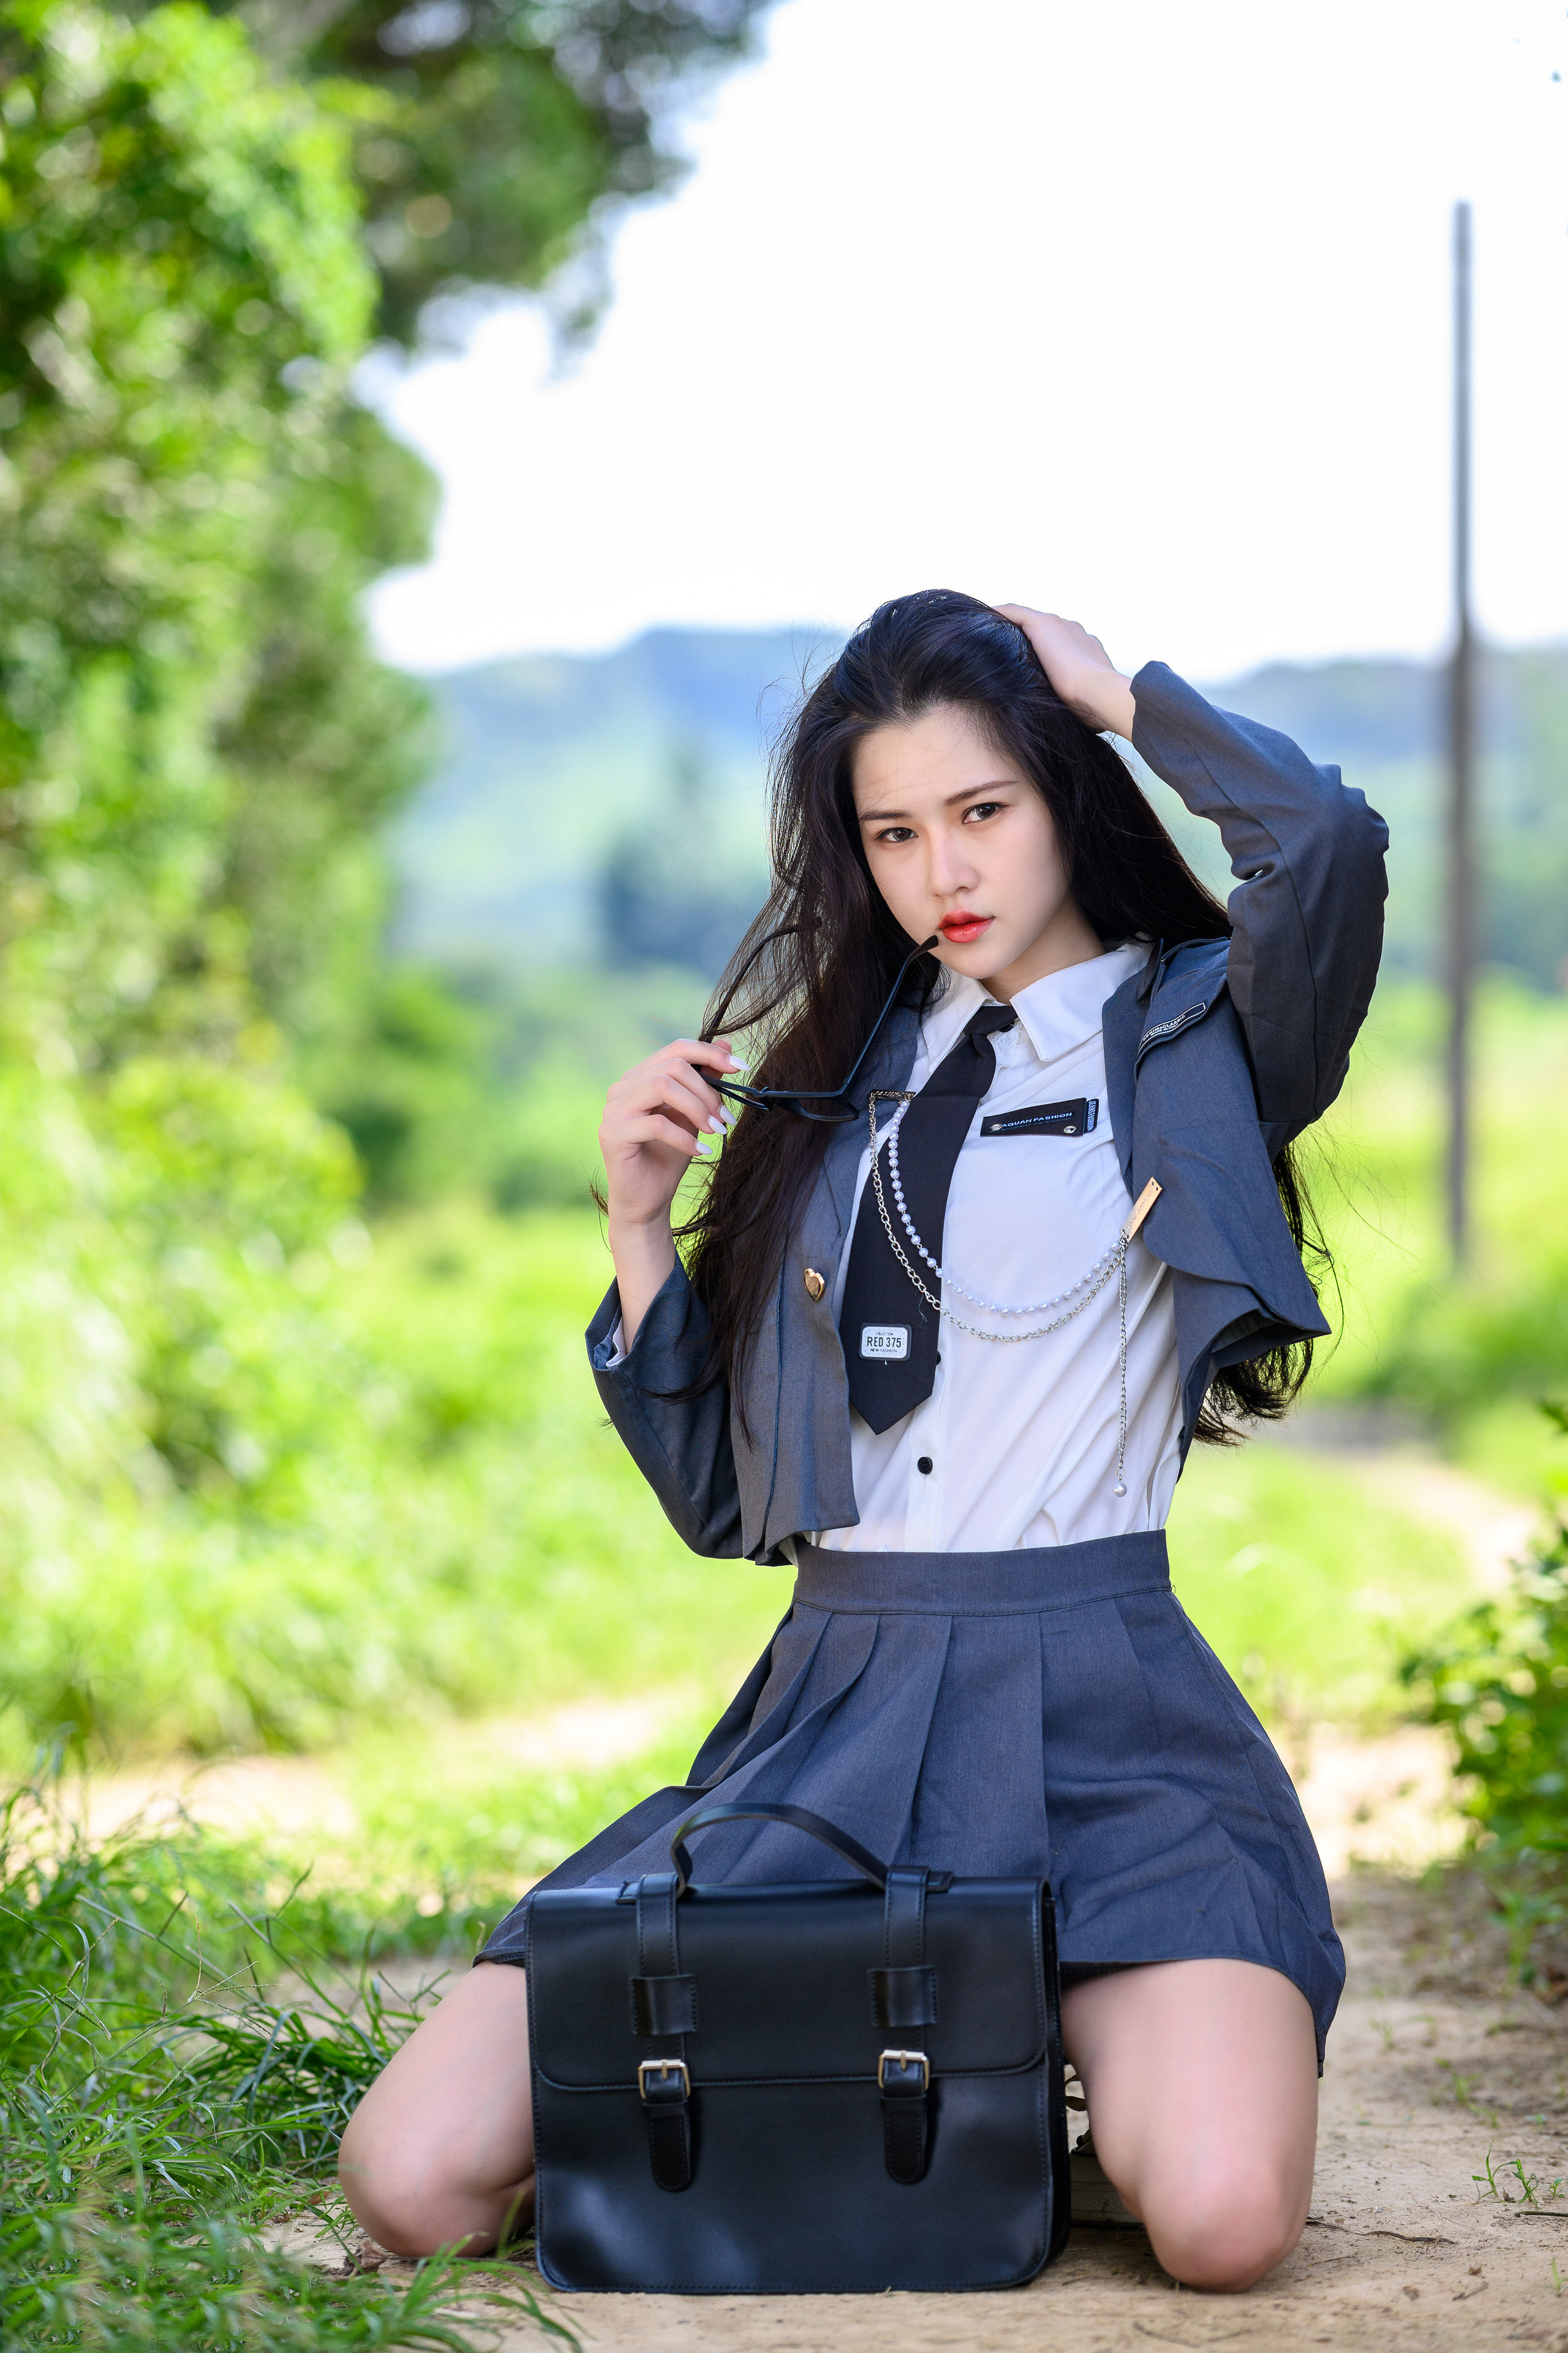 People 2560x3841 Asian model women long hair dark hair depth of field school uniform kneeling grass bushes trees glasses tie utility pole